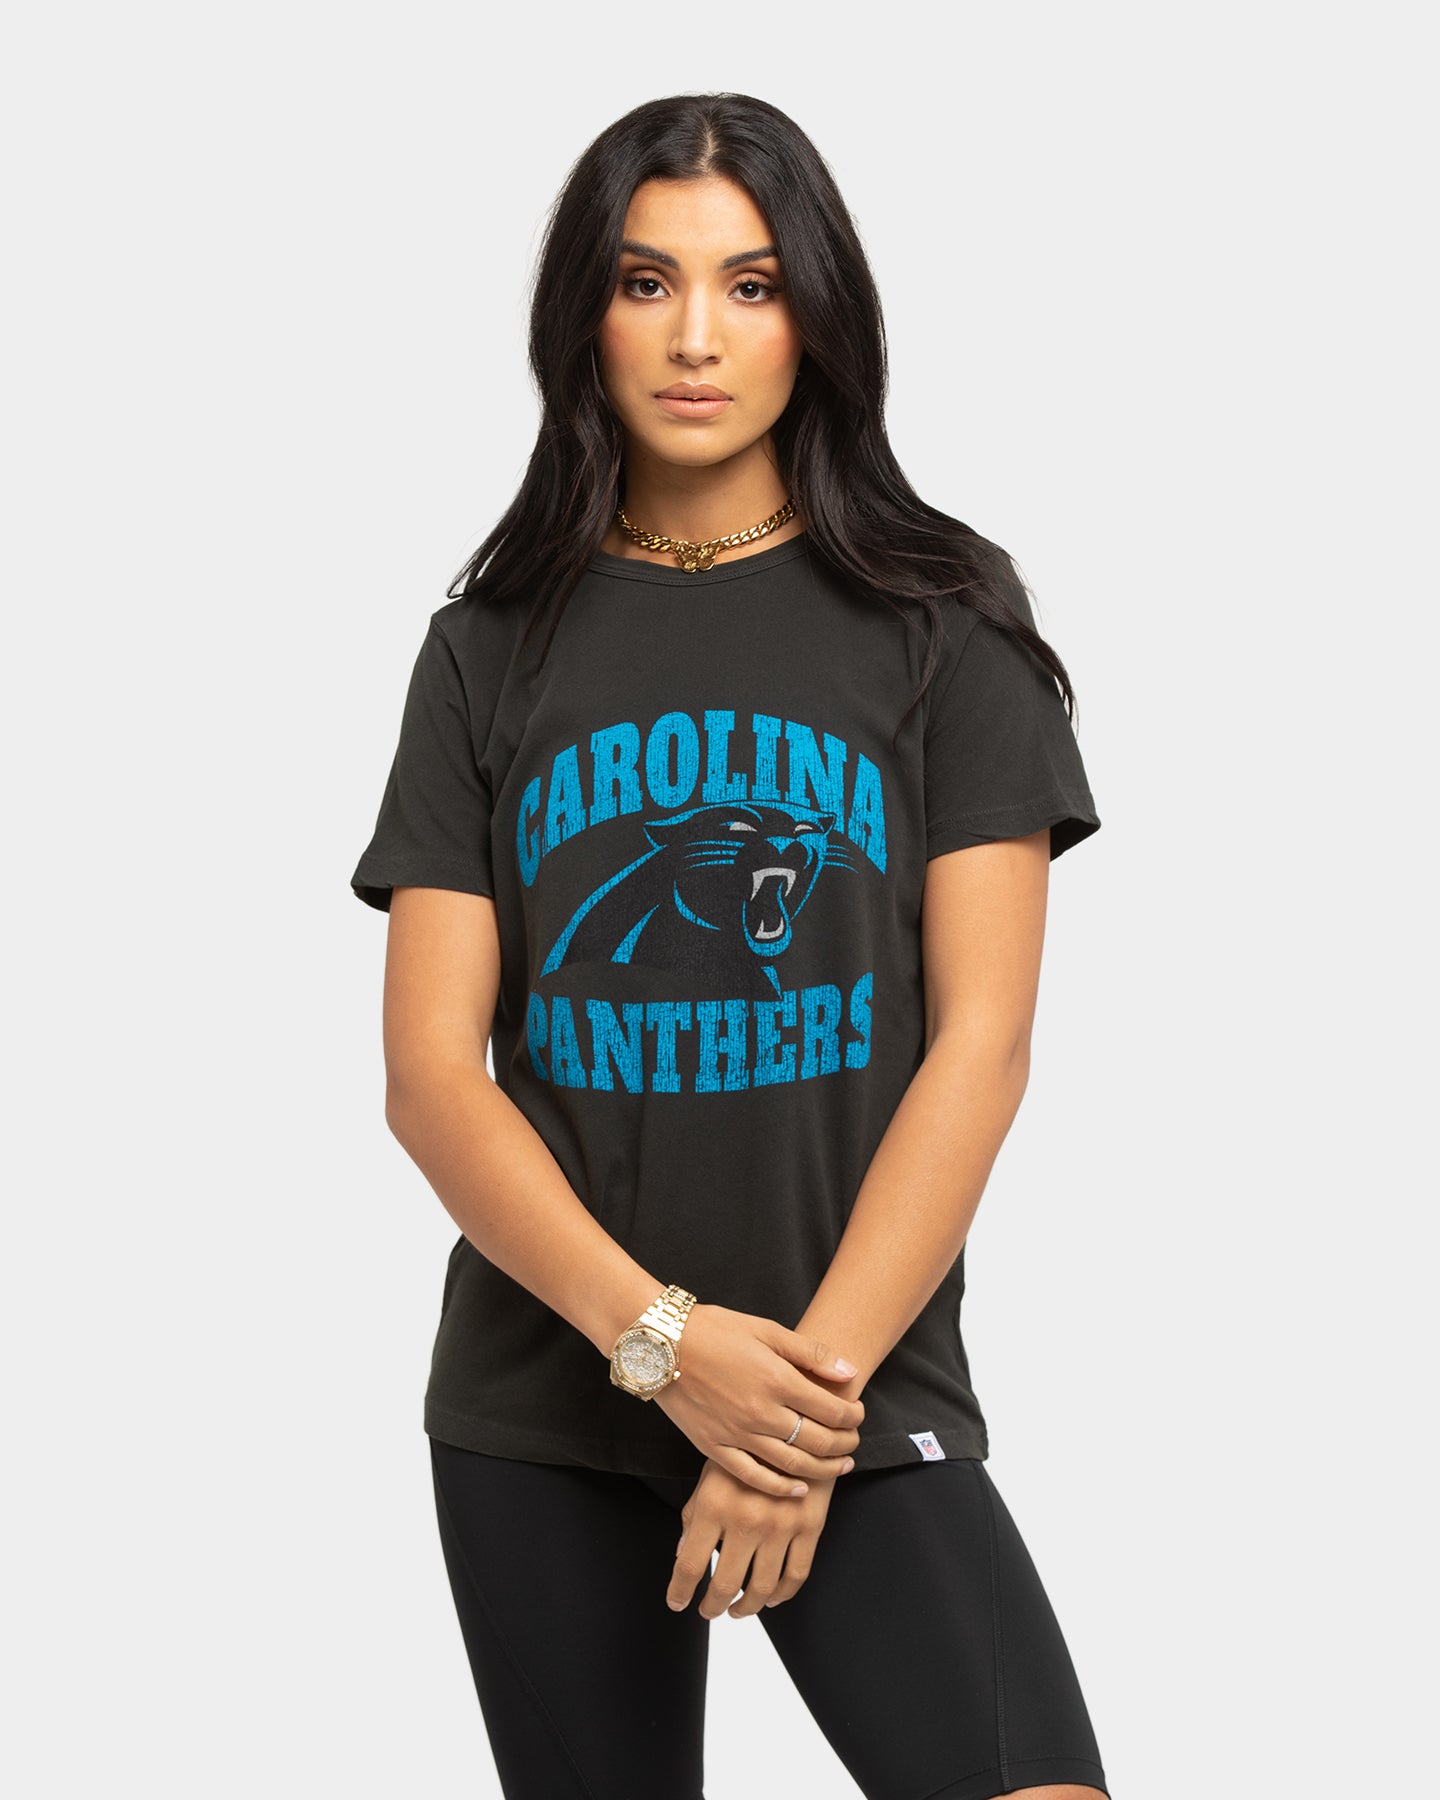 carolina panthers female shirts